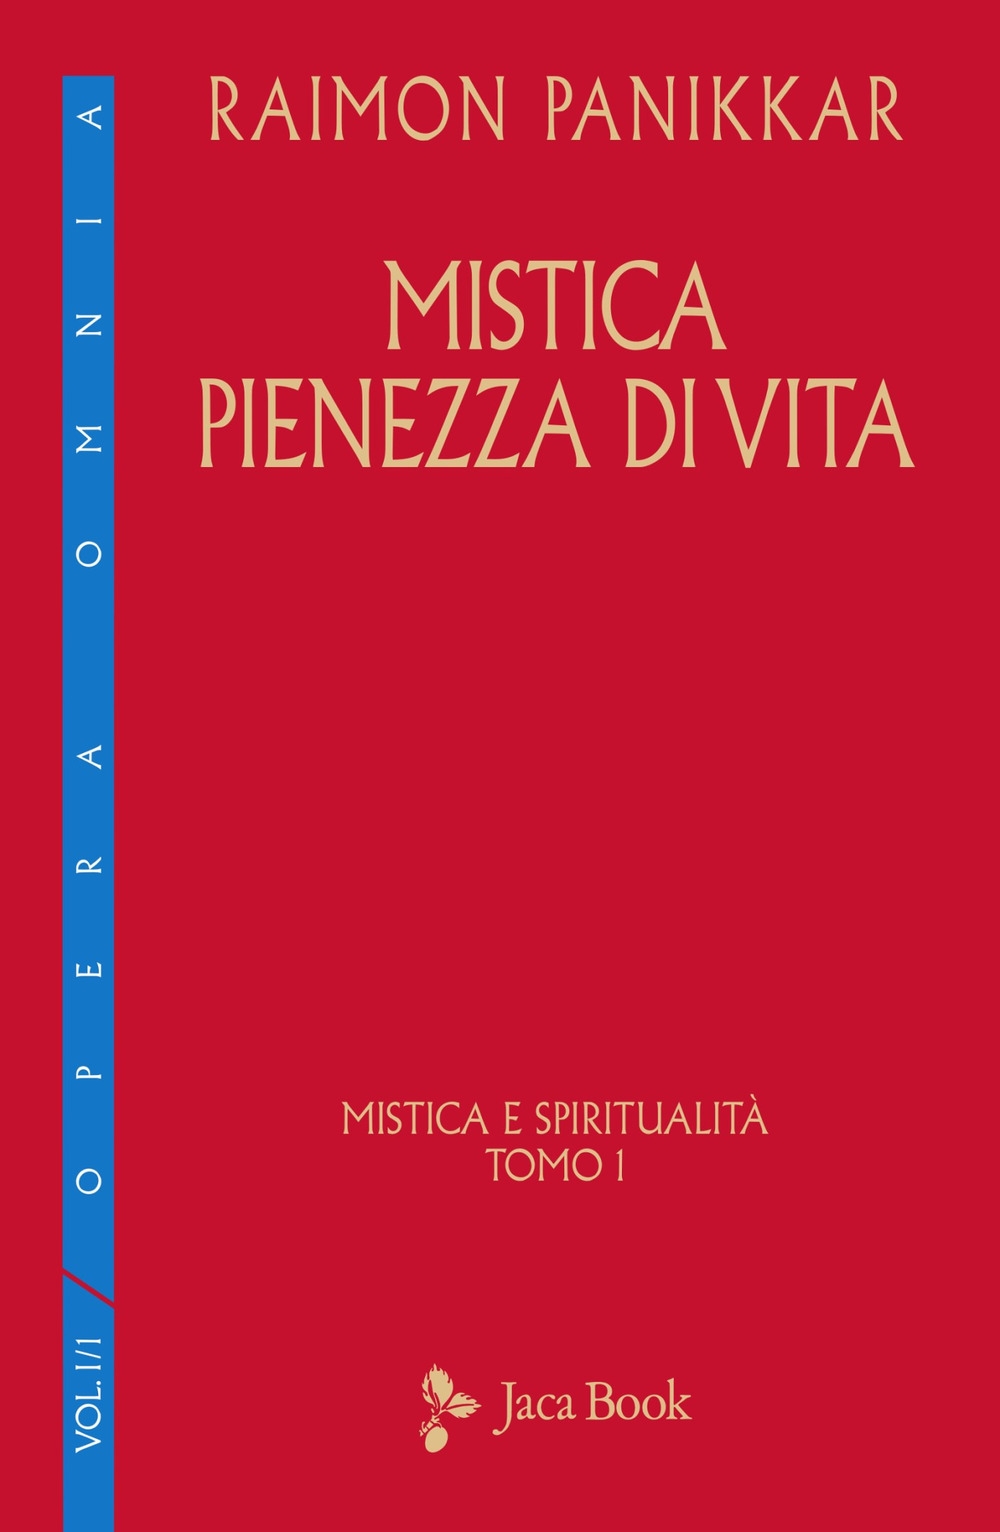 Libri Raimon Panikkar - Mistica E Spiritualita Vol 01 NUOVO SIGILLATO, EDIZIONE DEL 09/09/2021 SUBITO DISPONIBILE